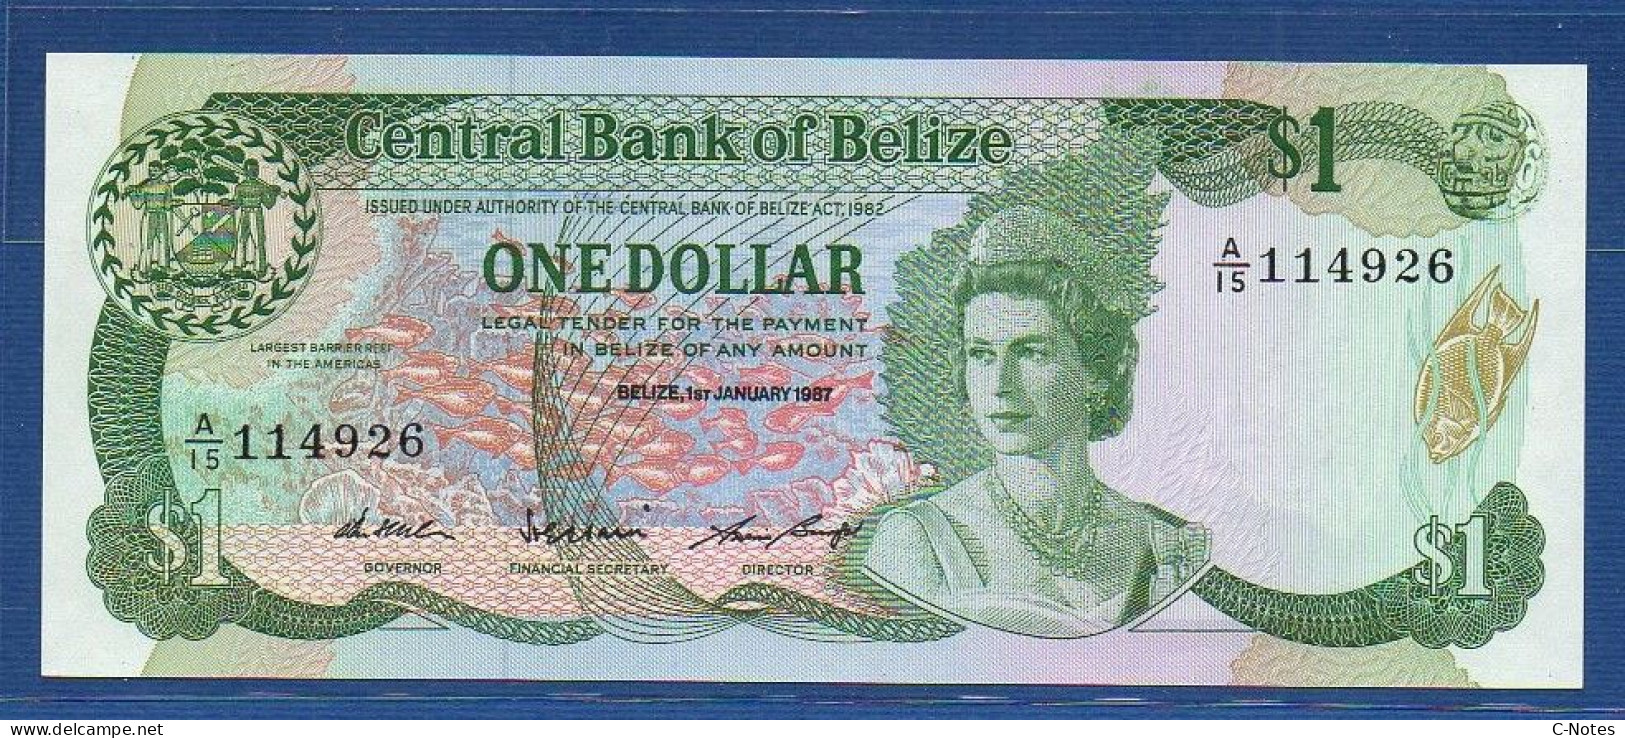 BELIZE - P.46c – 1 Dollar 1987 UNC, S/n A/15 114926 - Belize